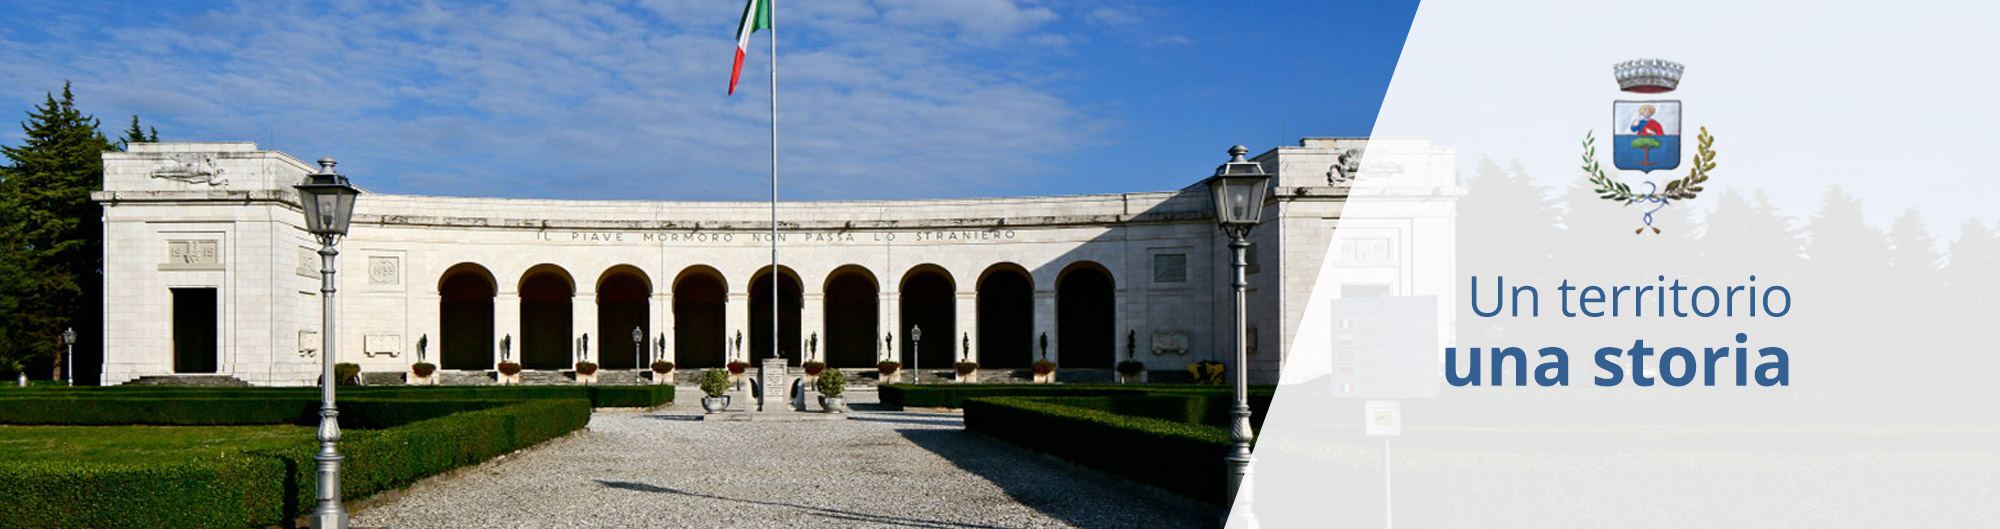 Slide Comune di San Biagio Treviso